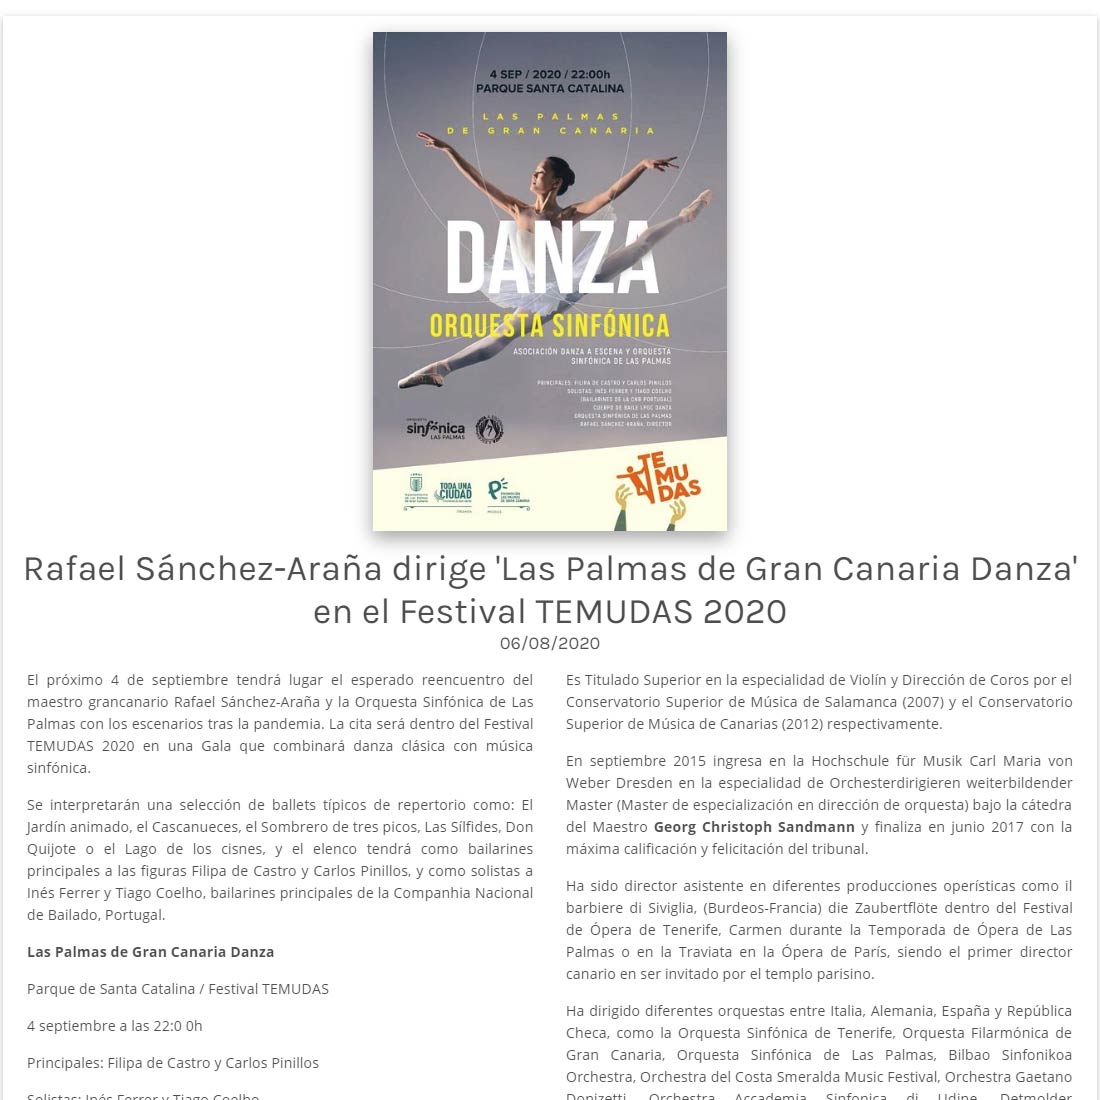 Rafael Sánchez-Araña dirige ‘Las Palmas de Gran Canaria Danza’ en el Festival TEMUDAS 2020